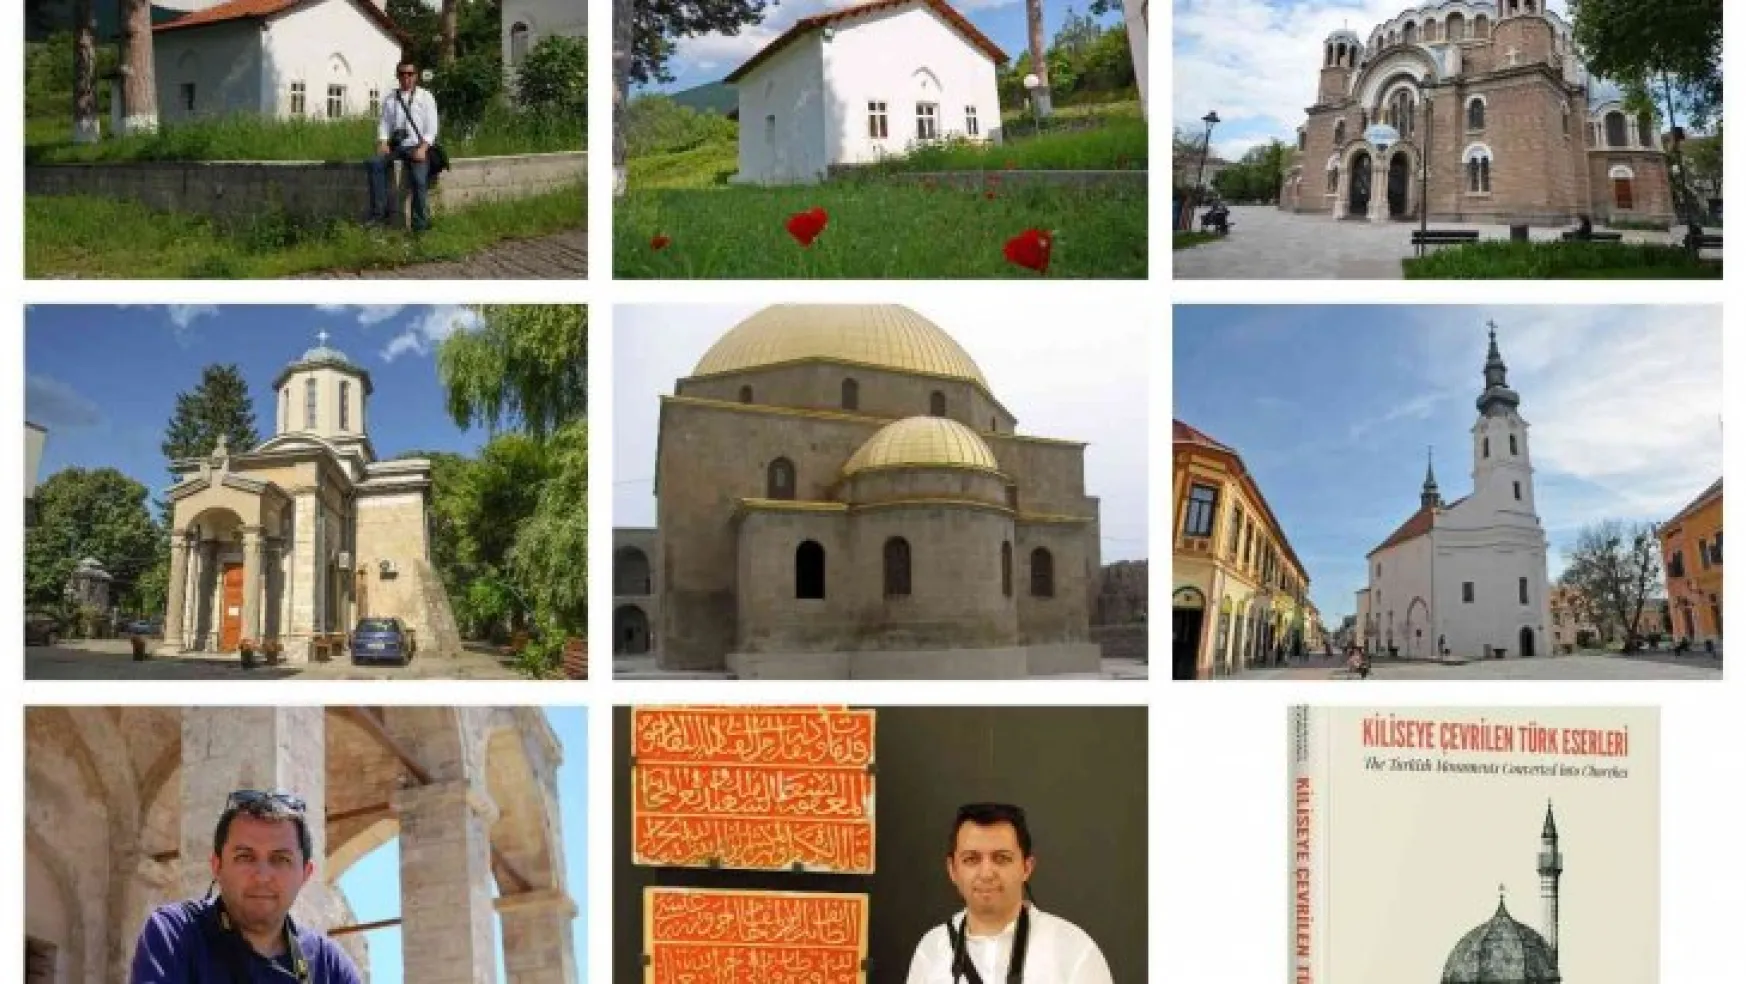 19 ülkede bulunan 334 Türk mimari eser kiliseye çevrilmiş